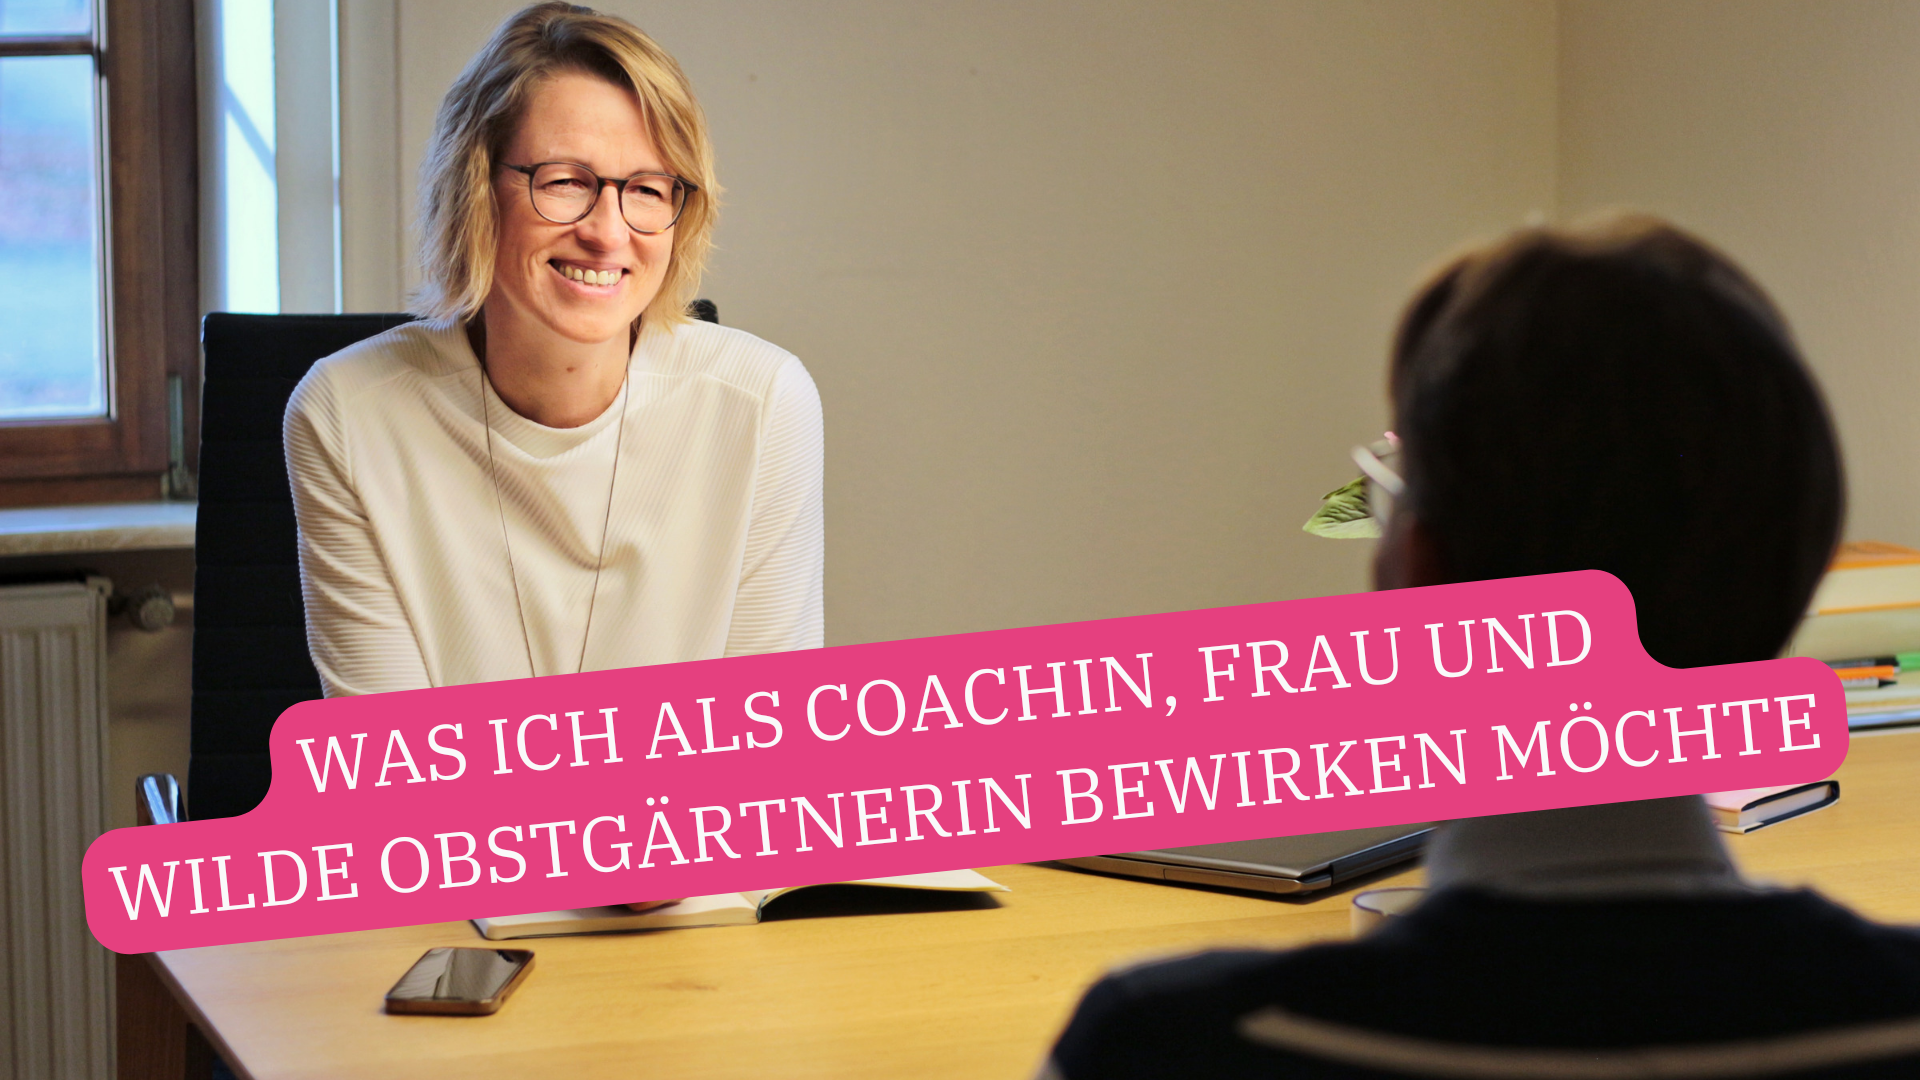 Read more about the article Was ich als Coachin, Frau und wilde Obstgärtnerin bewirken möchte